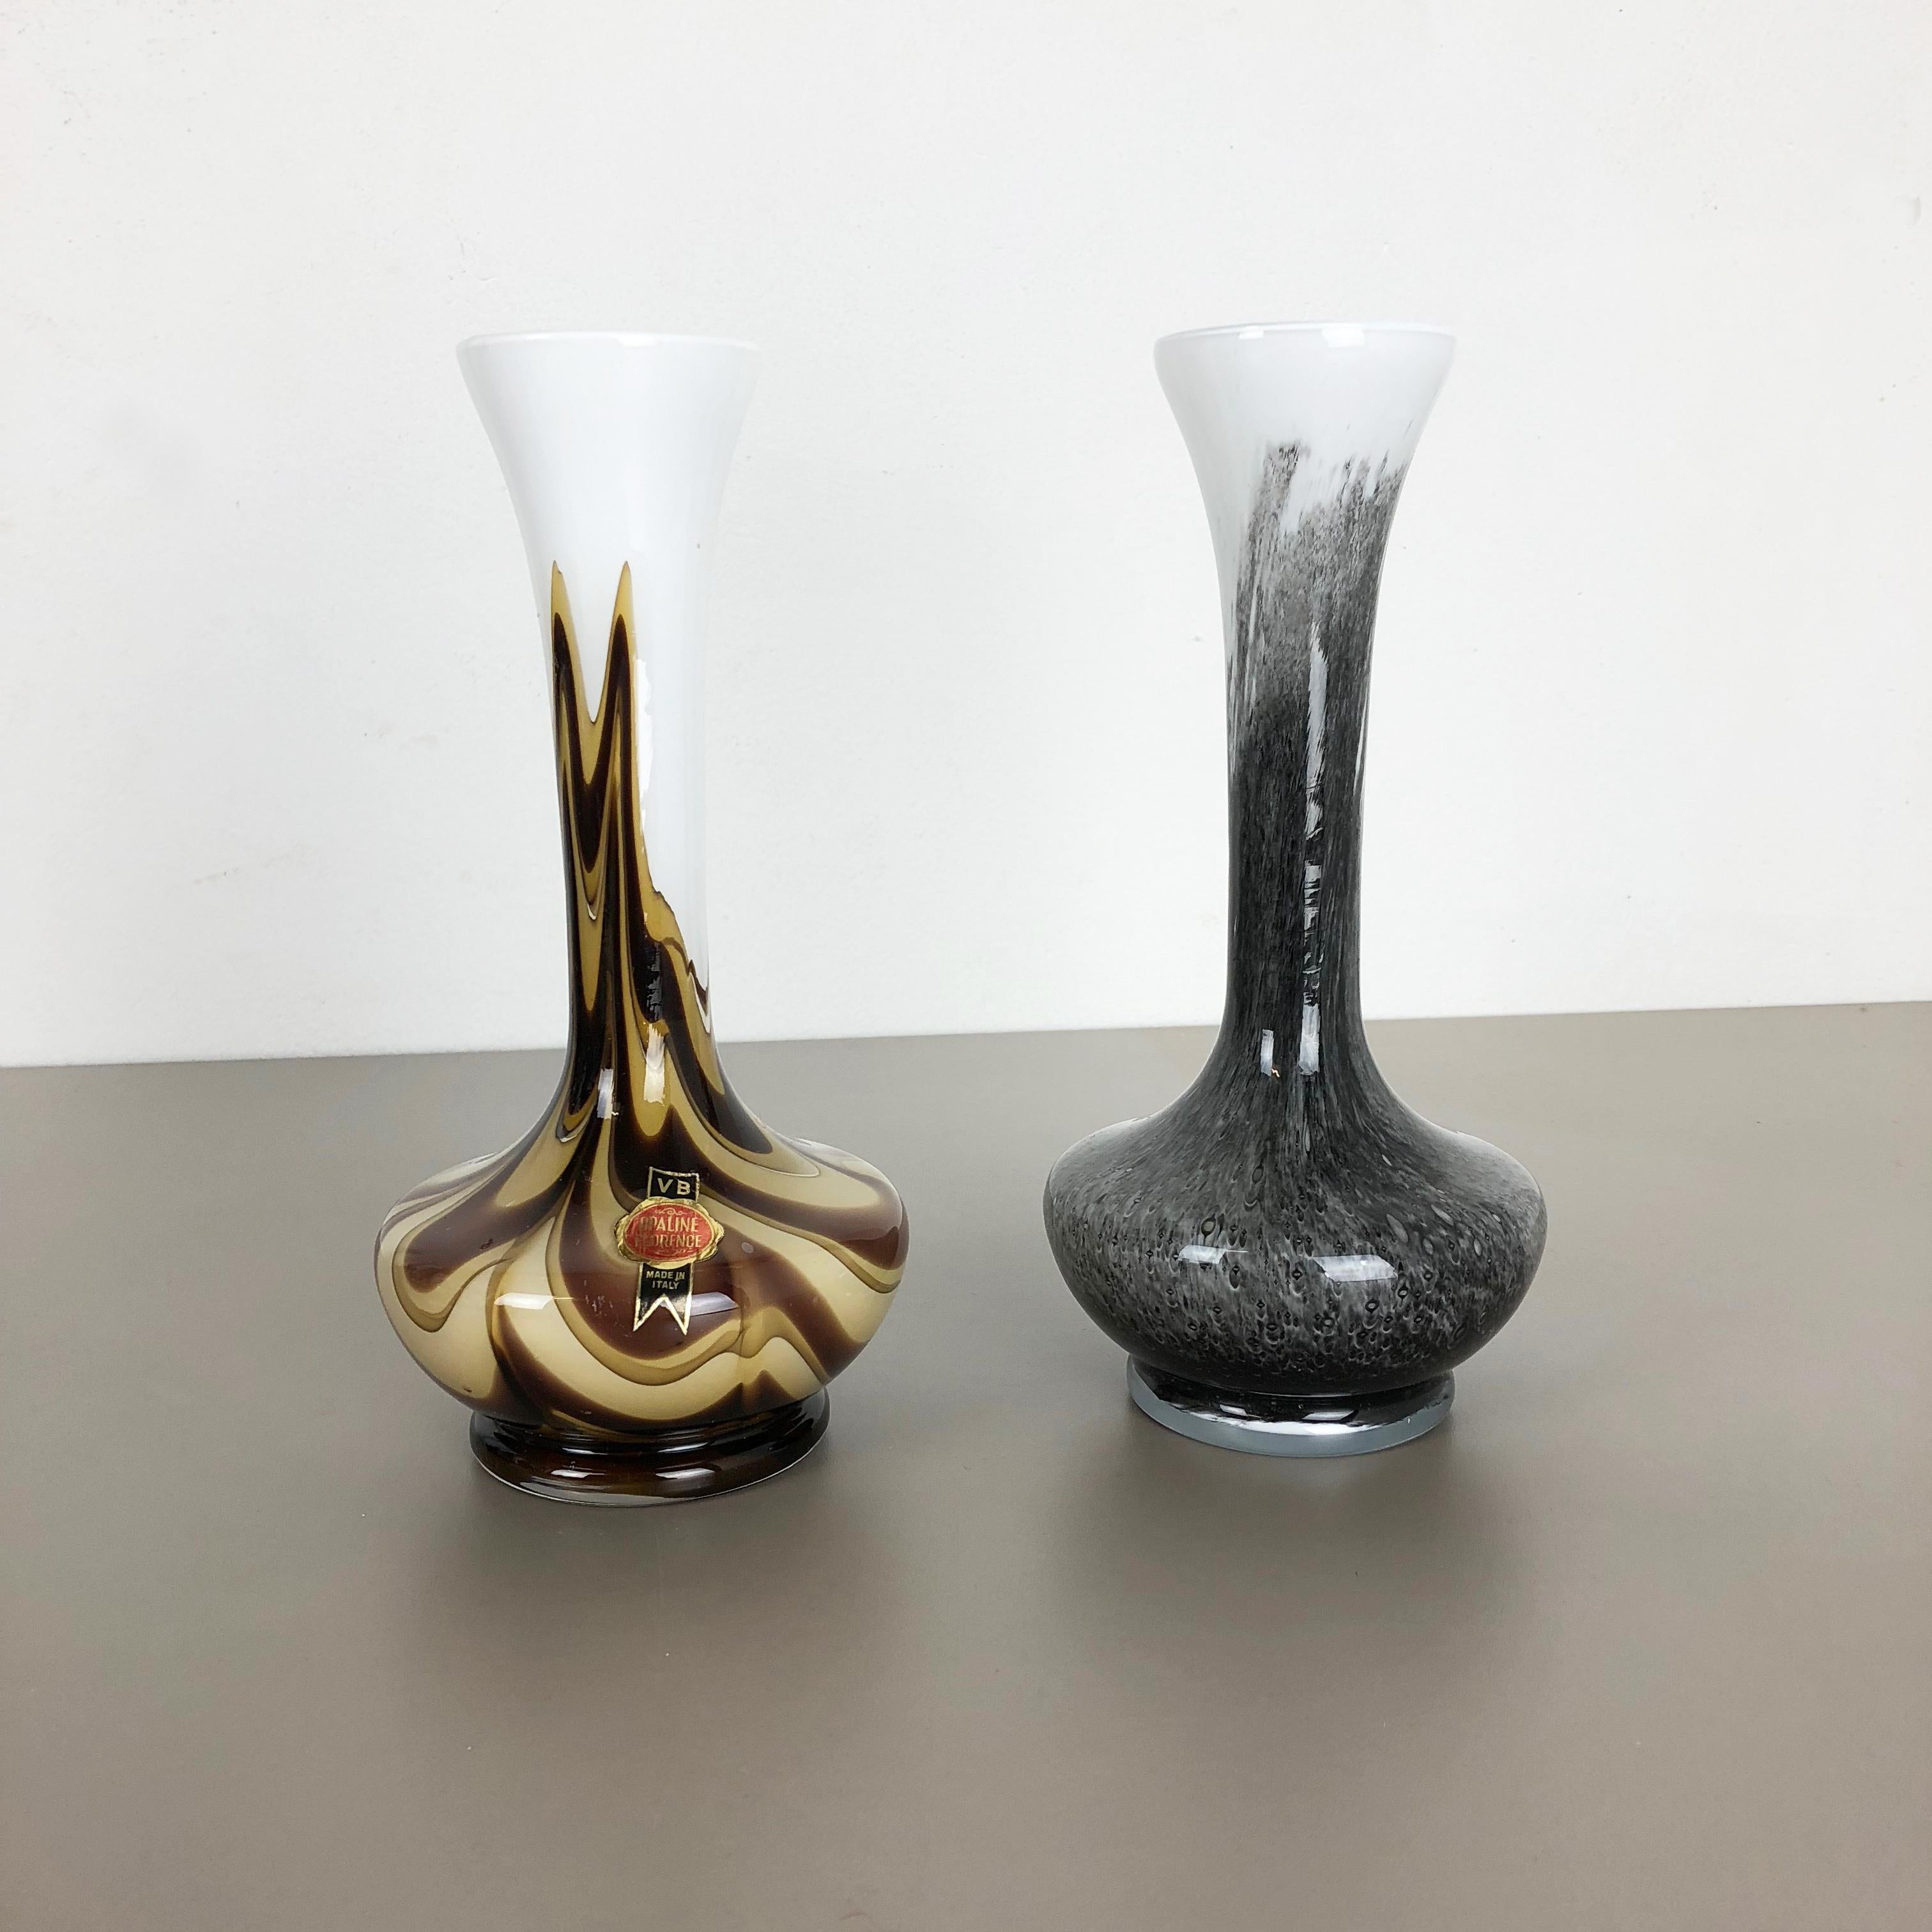 Artikel:

Pop Art Vase 2er Set


Produzent:

Opalin Florenz


Jahrzehnt:

1970s.


Beschreibung:

Originales mundgeblasenes Vasen-Set aus den 1970er Jahren, hergestellt in Italien von Opaline Florence. Hergestellt aus hochwertigem italienischem